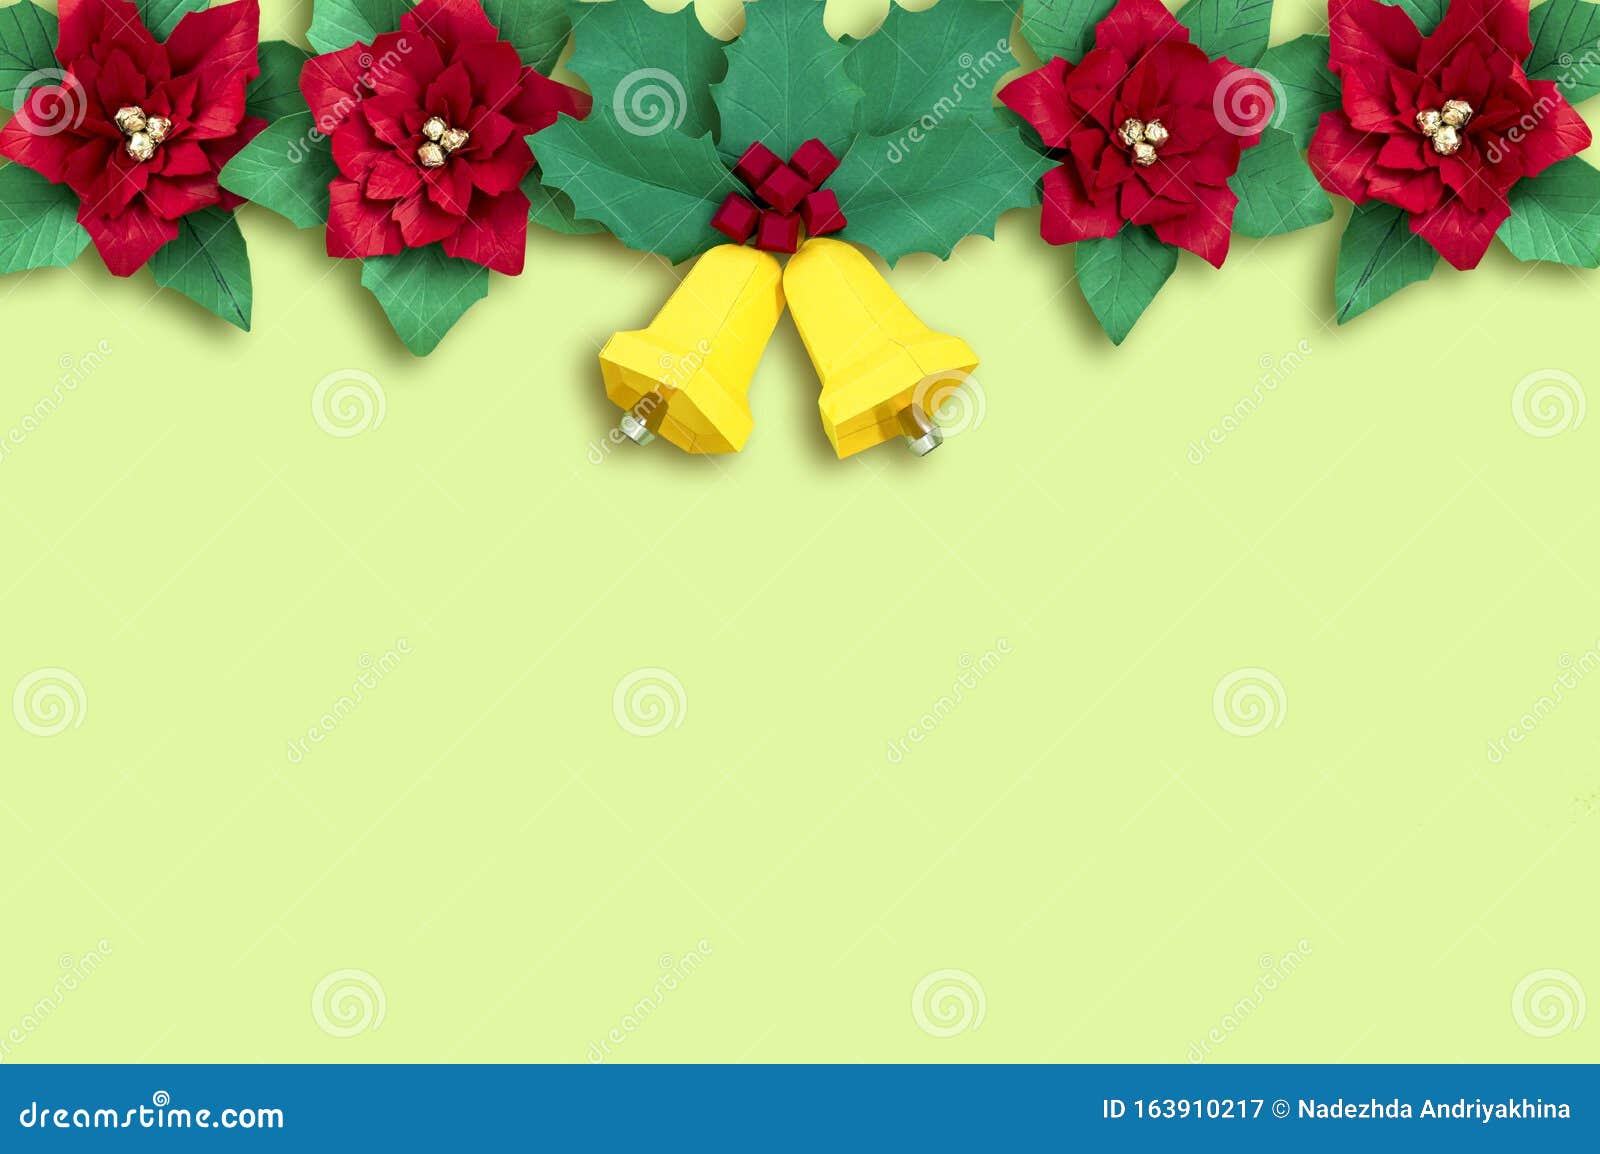 Garland De Papel, Flores De Cinsettia Y Campanas De Navidad Imagen de  archivo - Imagen de minimalismo, baya: 163910217